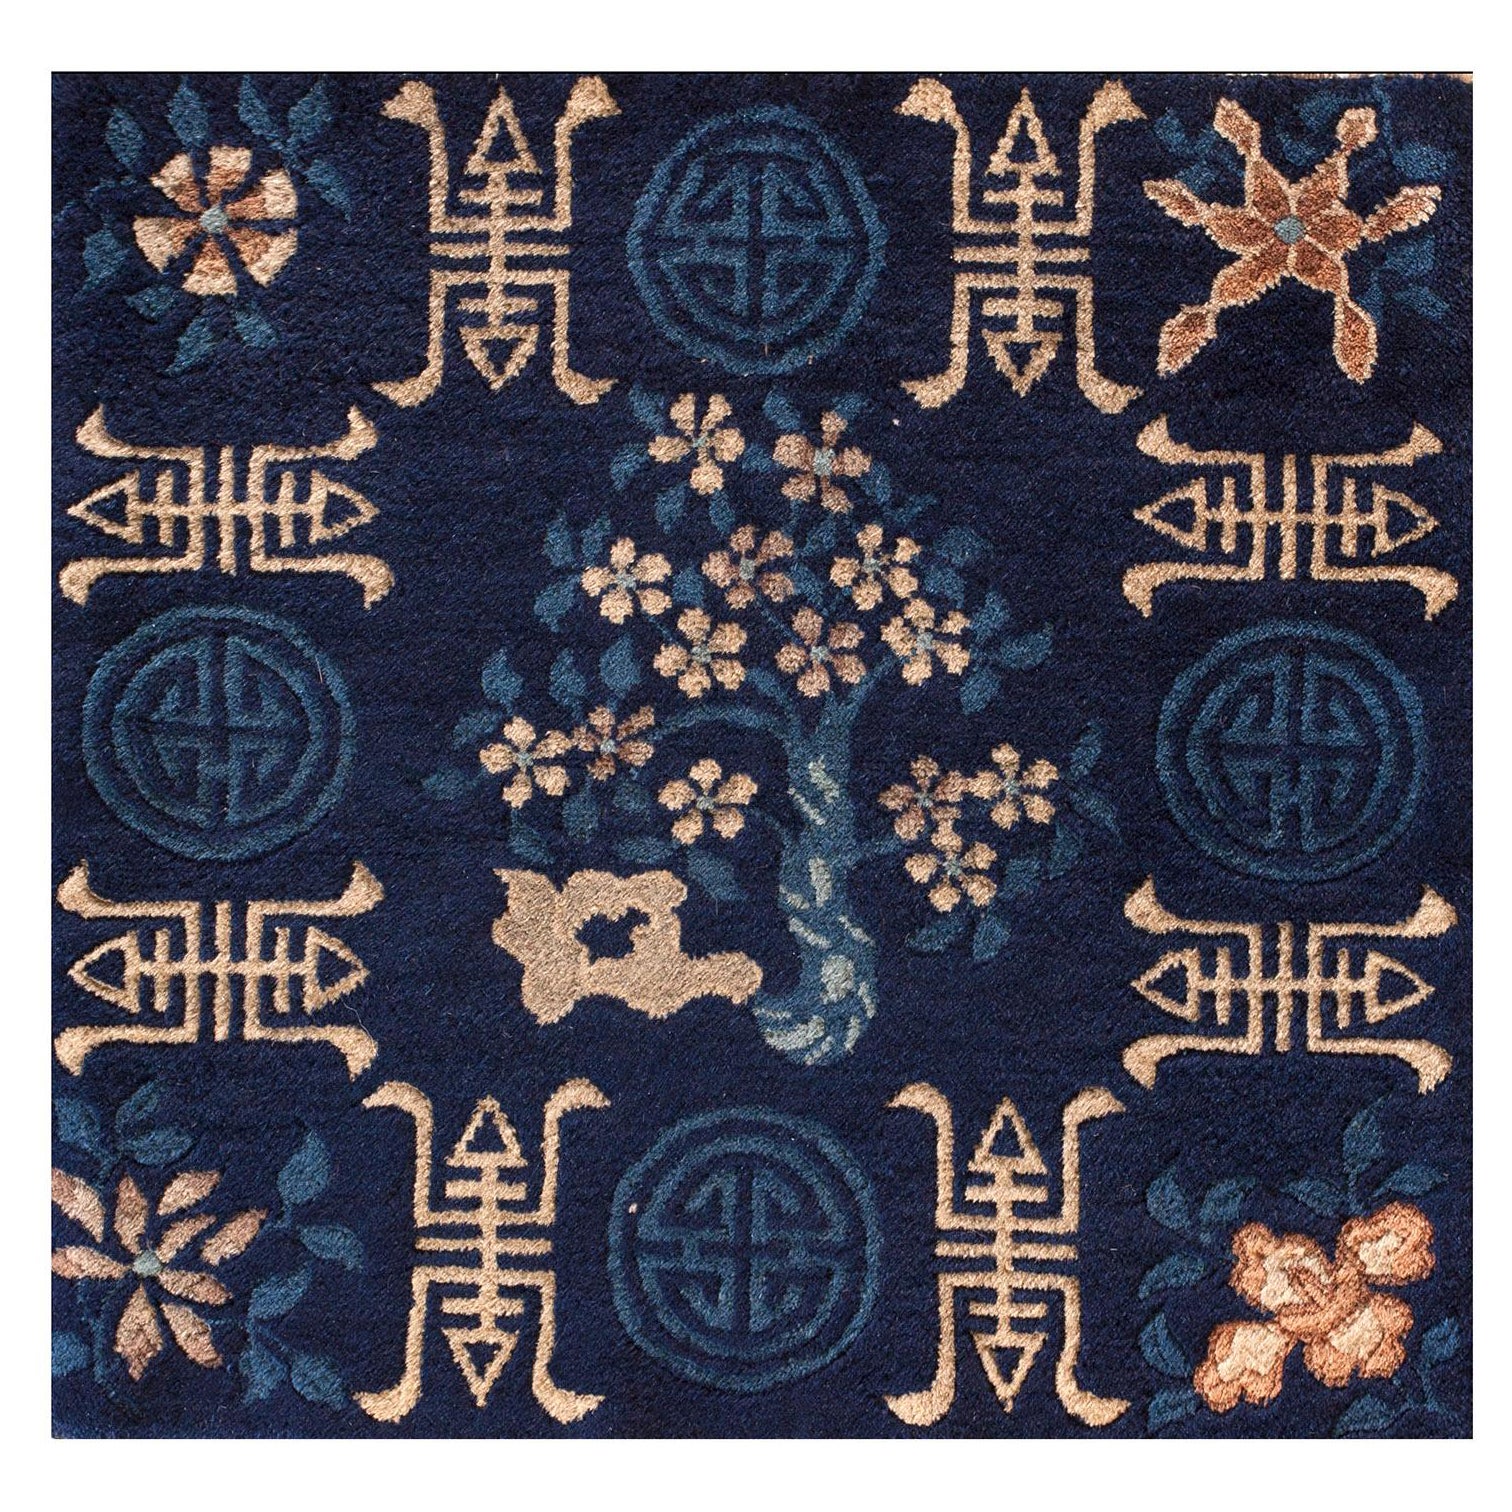 Chinesischer Pekinger Teppich des späten 19. Jahrhunderts ( 2' x 2' - 62 x 62)